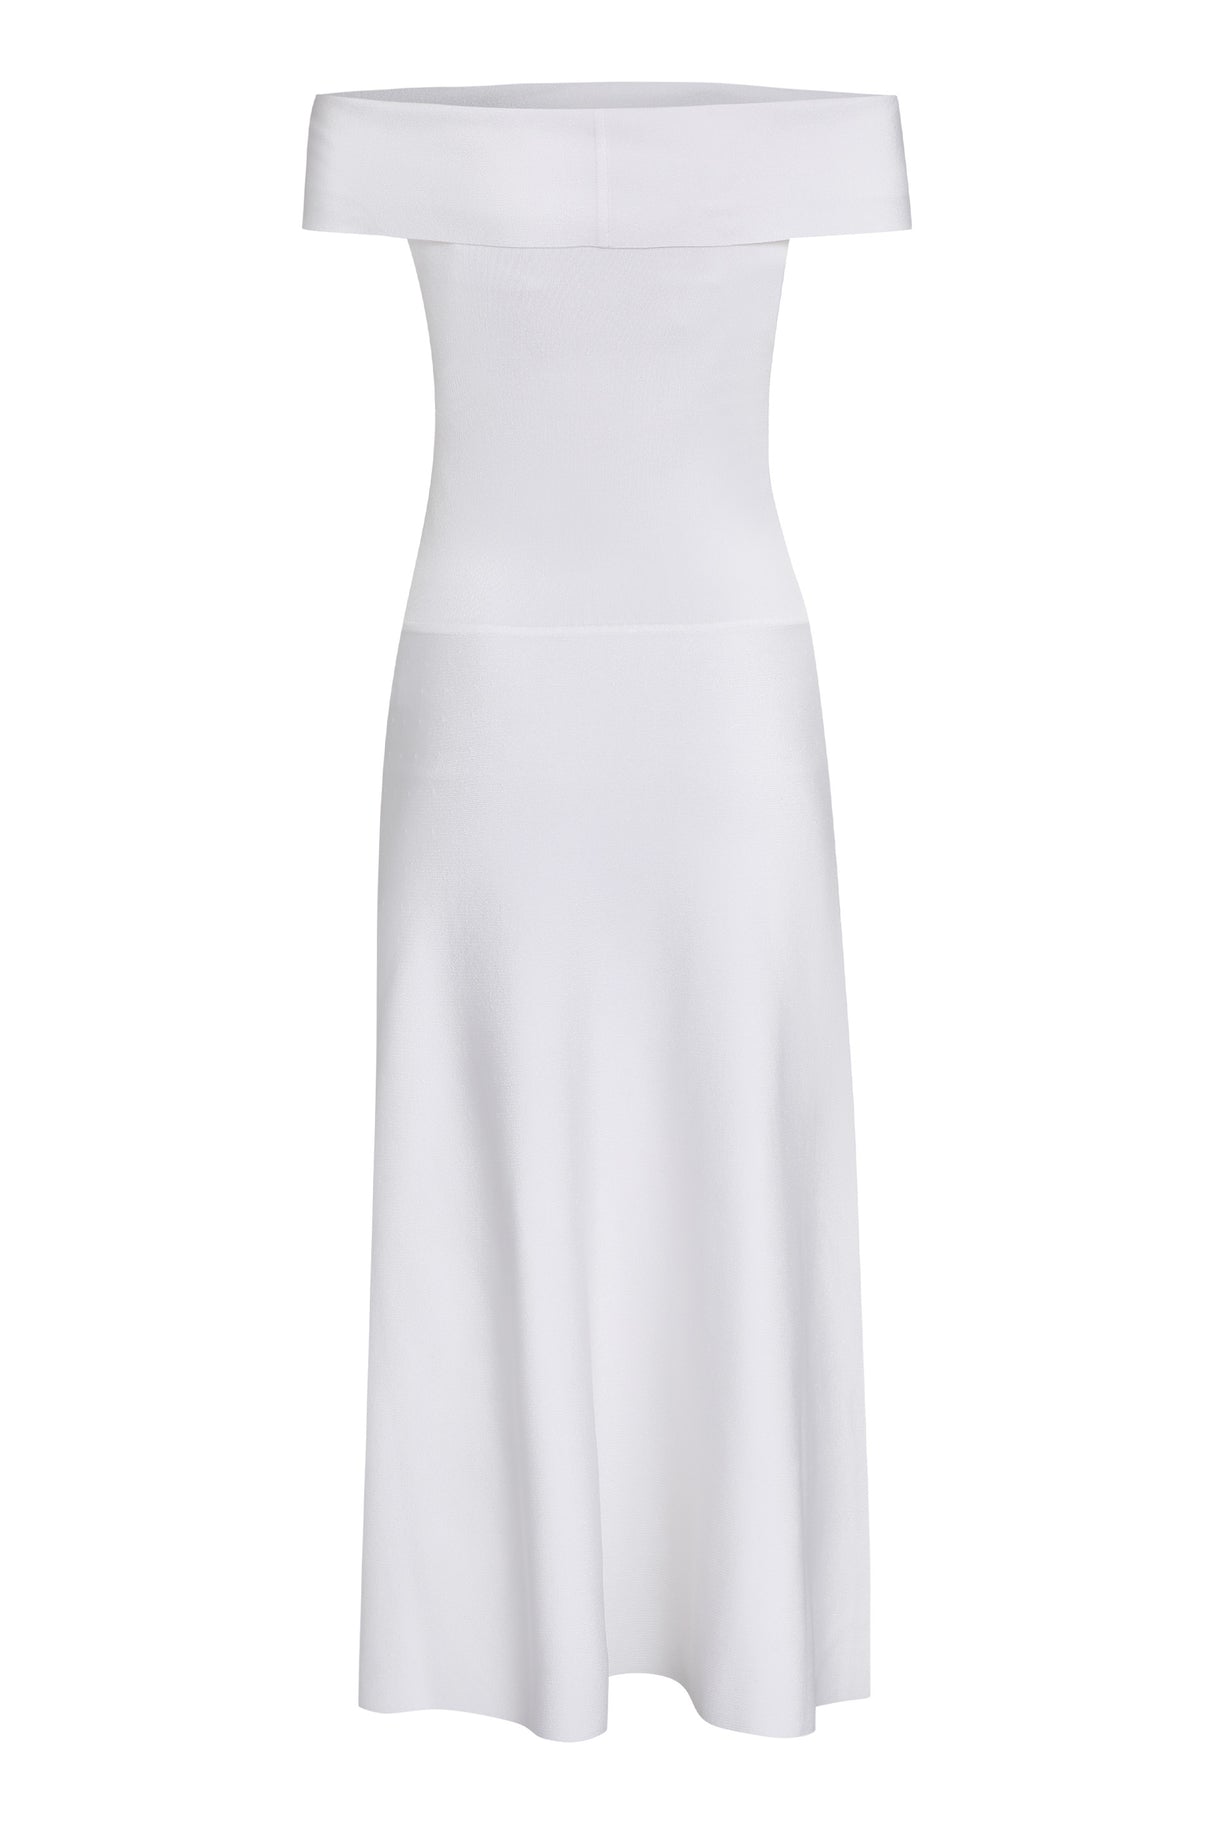 FABIANA FILIPPI Stunning White Flared Skirt Viscose Dress for Women - SS24